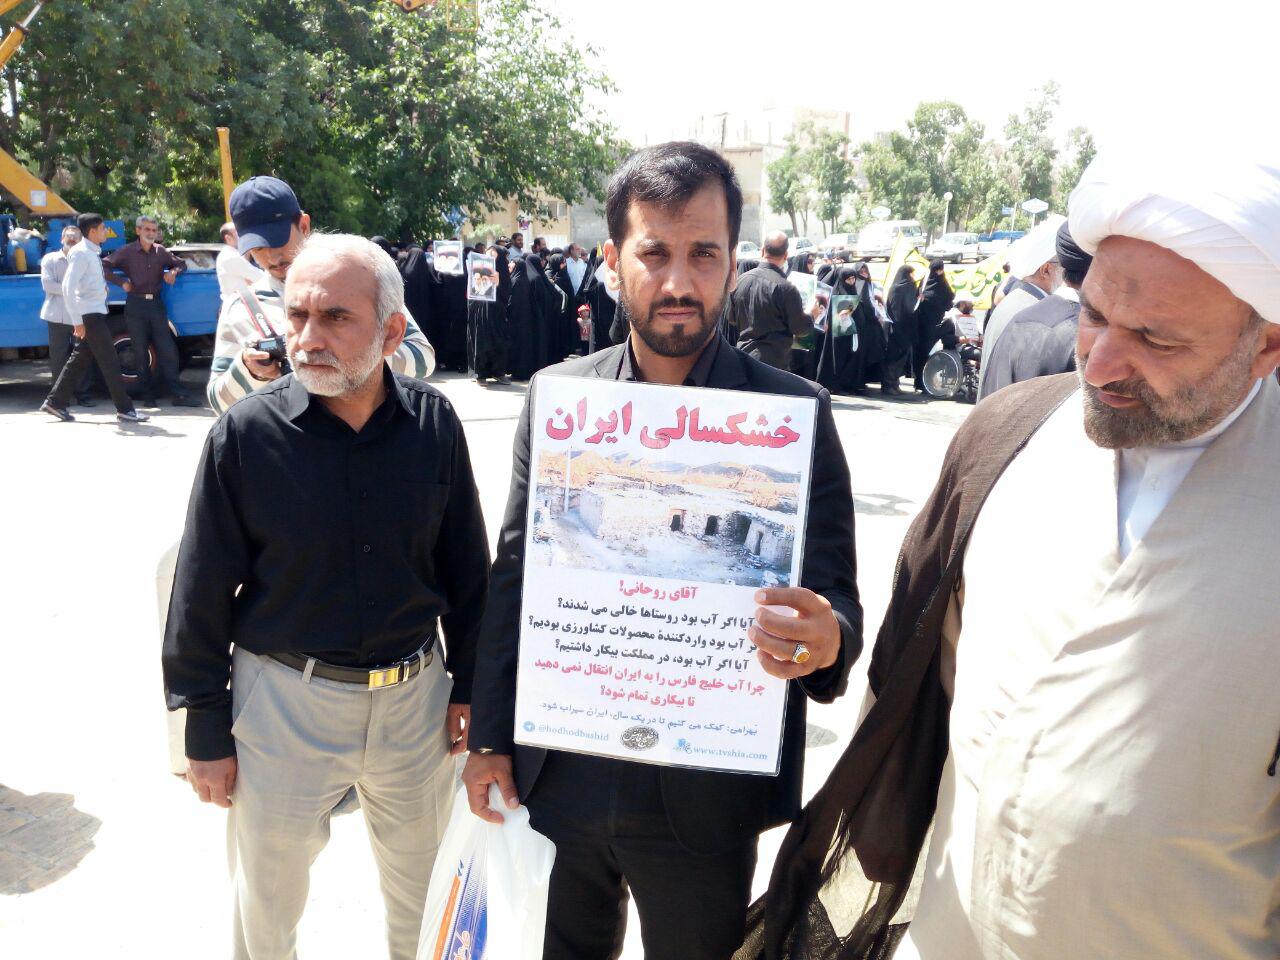 حاشیه های راهپیمایی پانزده خرداد در قم در مورد بحران خشکسالی در خواست مناظره با رئیس جمهور محترم دکتر حسن روحانی در مورد اقتصاد کشور 